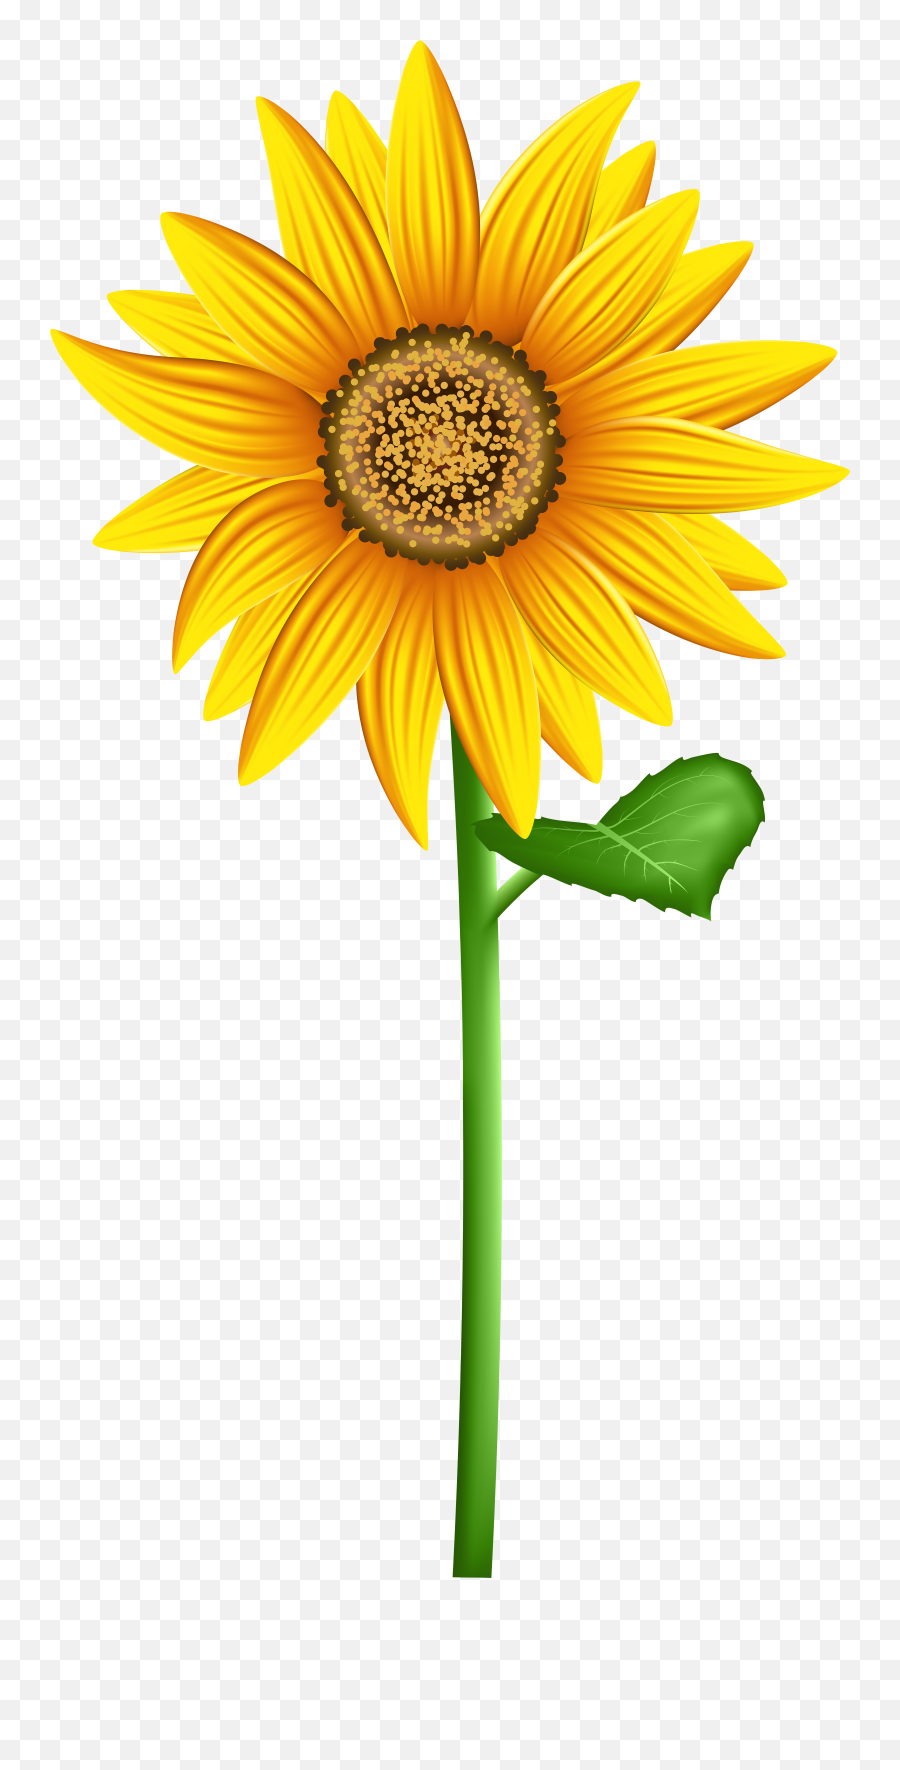 Transparent Background Sunflower Clipart Images - Transparent Background Sun Flower Clip Art Emoji,Sunflower Emoji